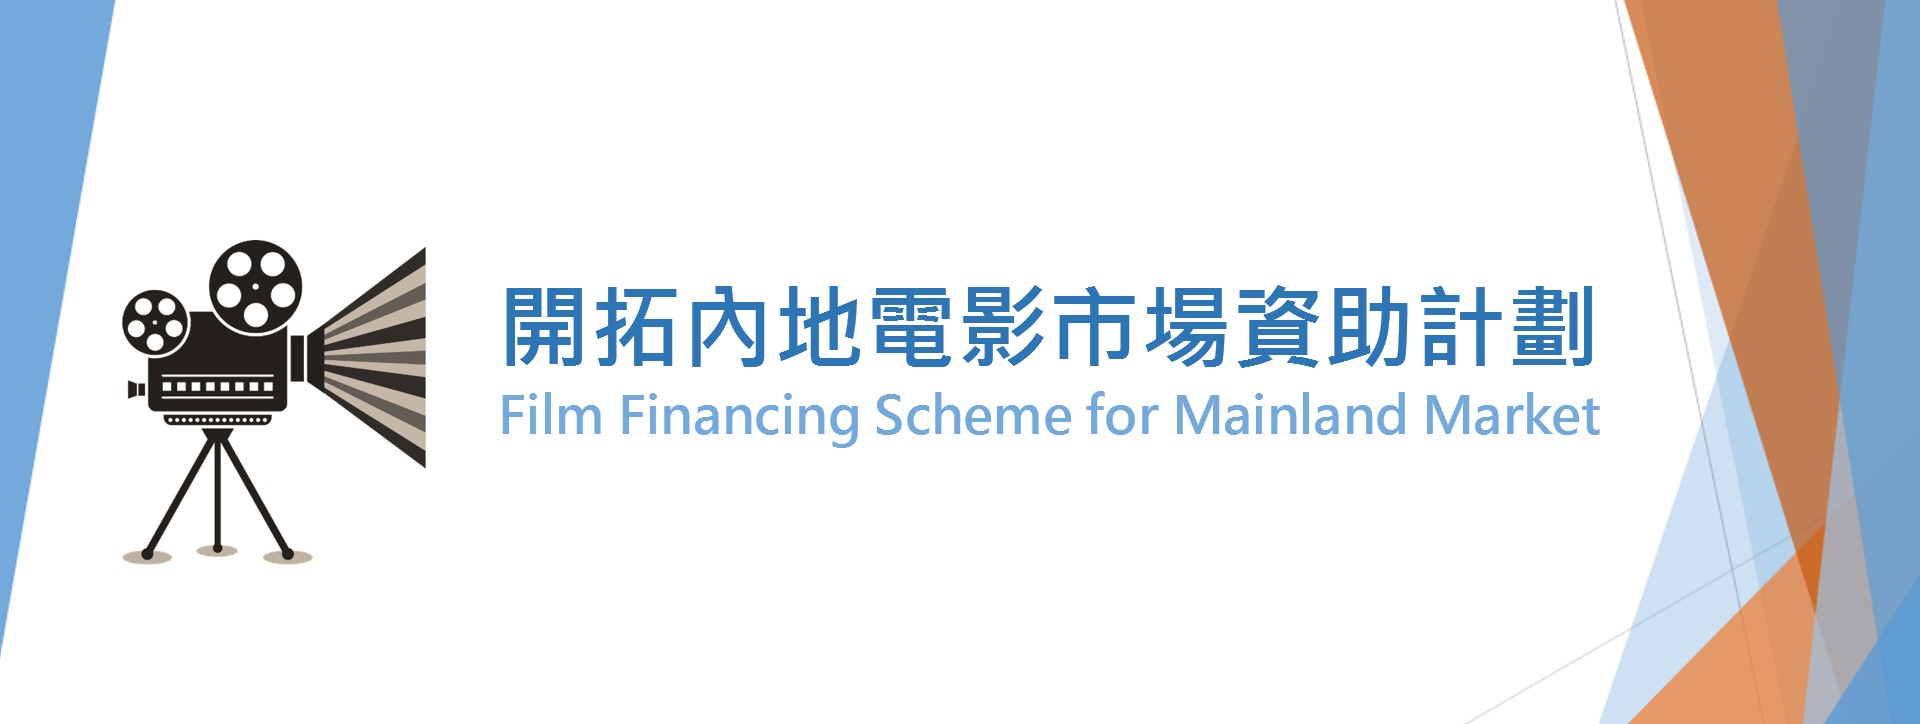 Film Financing Scheme for Mainland Market